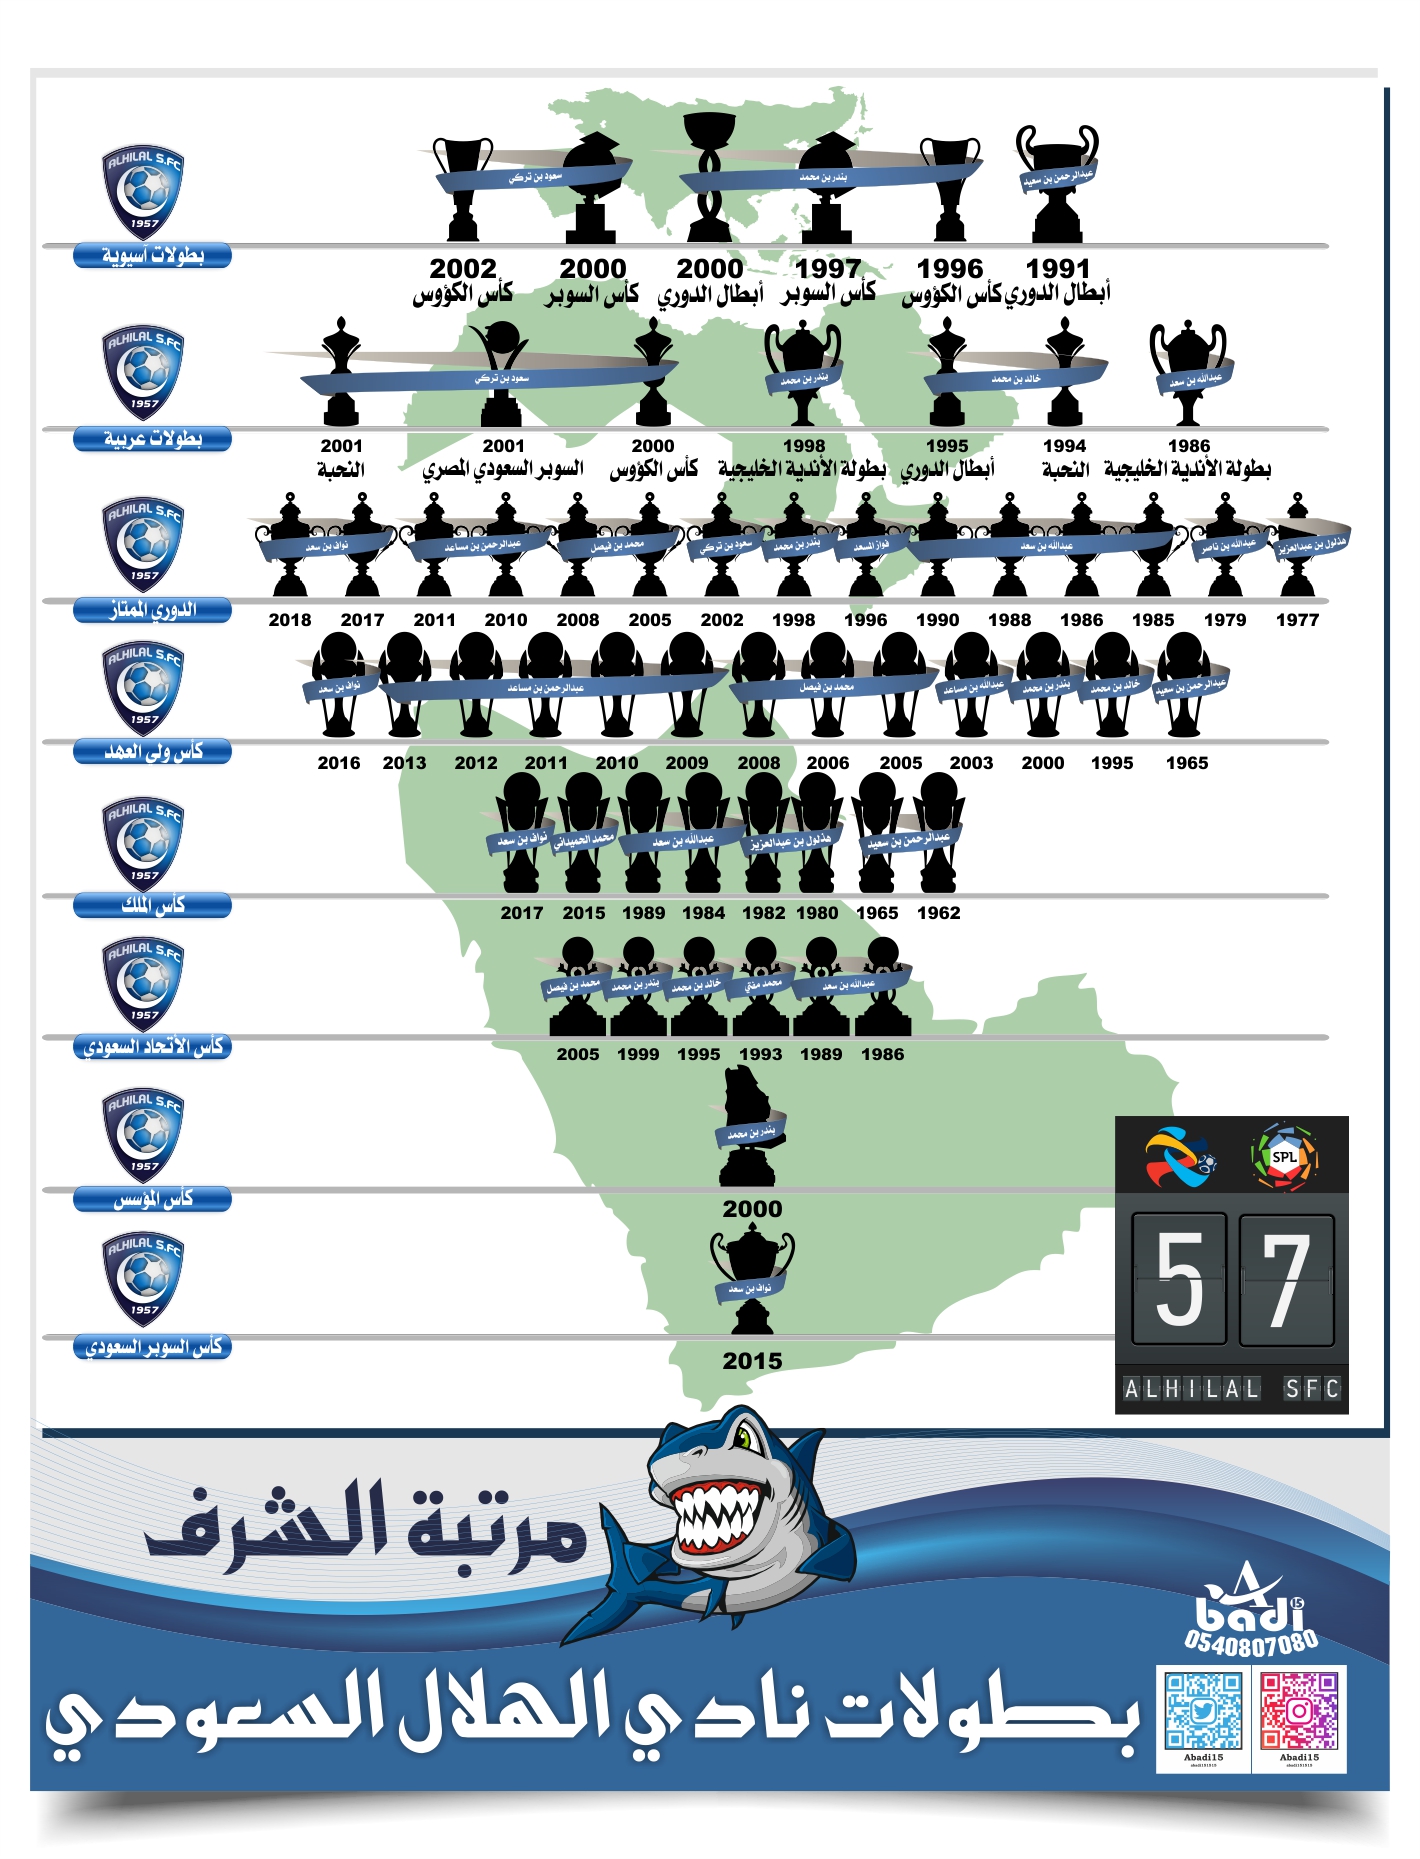 تصميم يوضح بطولات الهلال 57 باسم الرئيس وتاريخ البطولة نادي الهلال السعودي شبكة الزعيم الموقع الرسمي